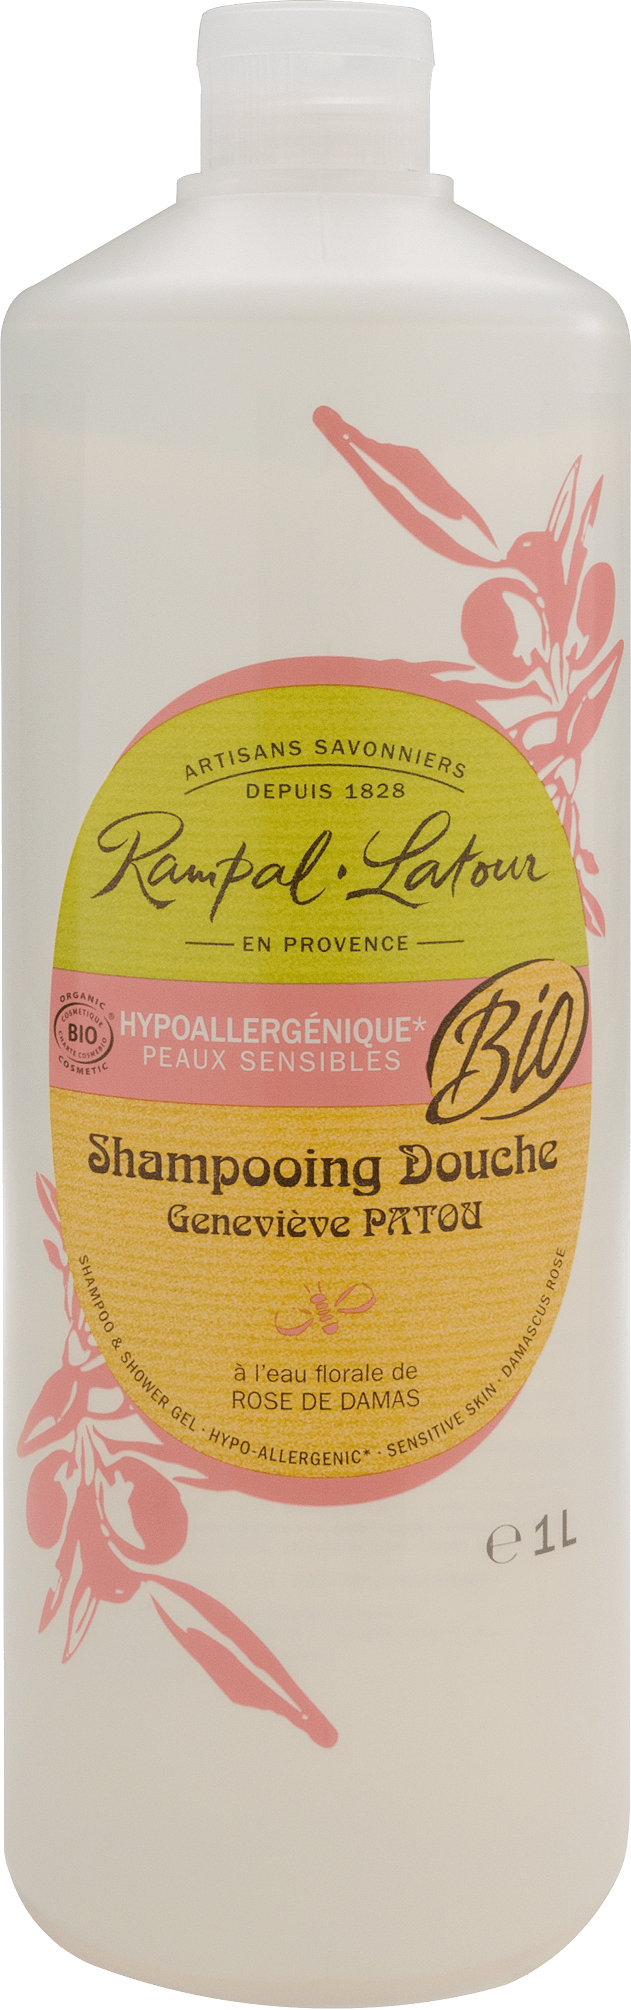 Bio Dusch-Shampoo Damaskus Rose (hypoallergen) 1 Liter - Rampal Latour